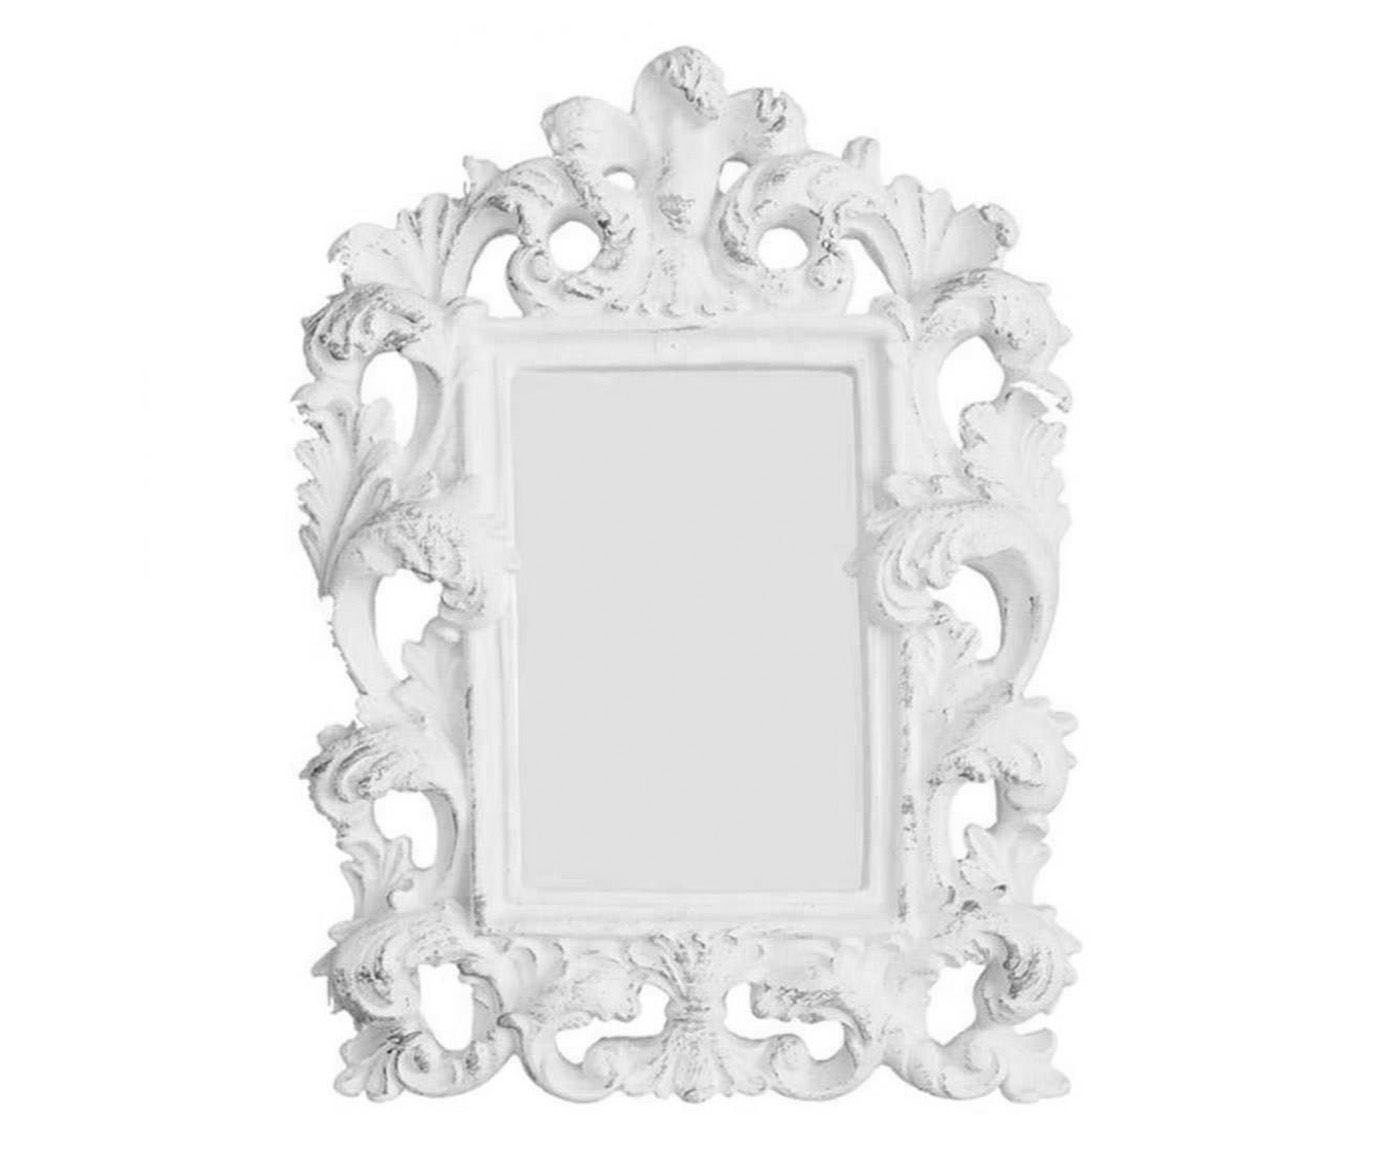 Moldura para espelho artur - 15x22cm | Westwing.com.br